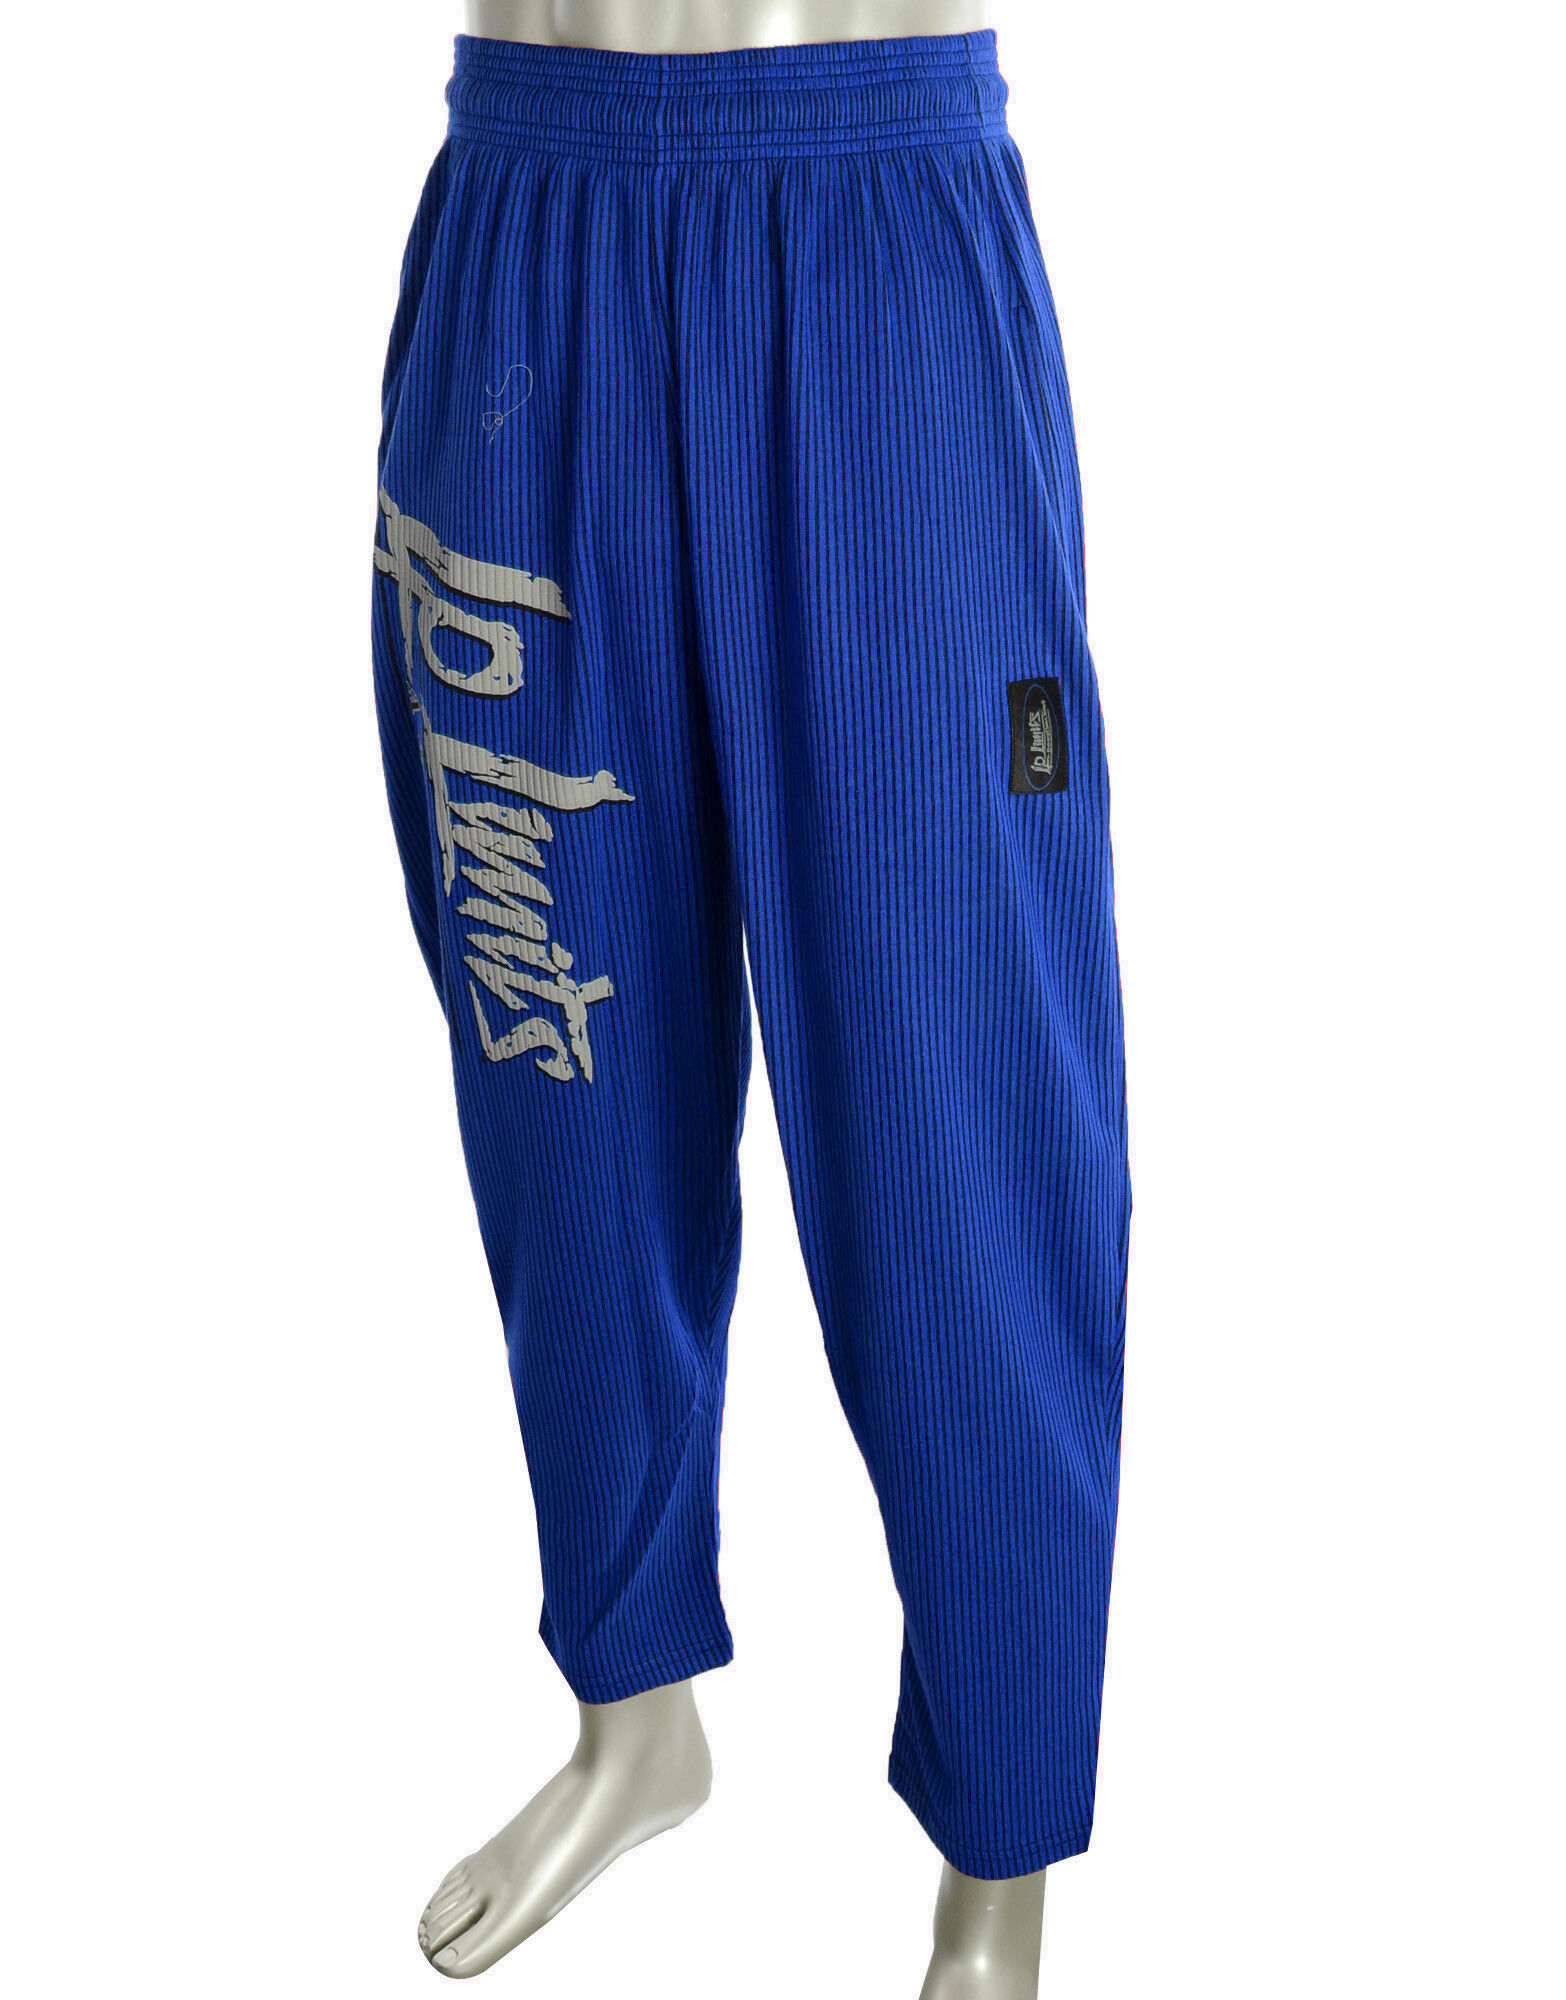 LEGAL POWER Bodypants Boston Colore: Royal Blu Xl